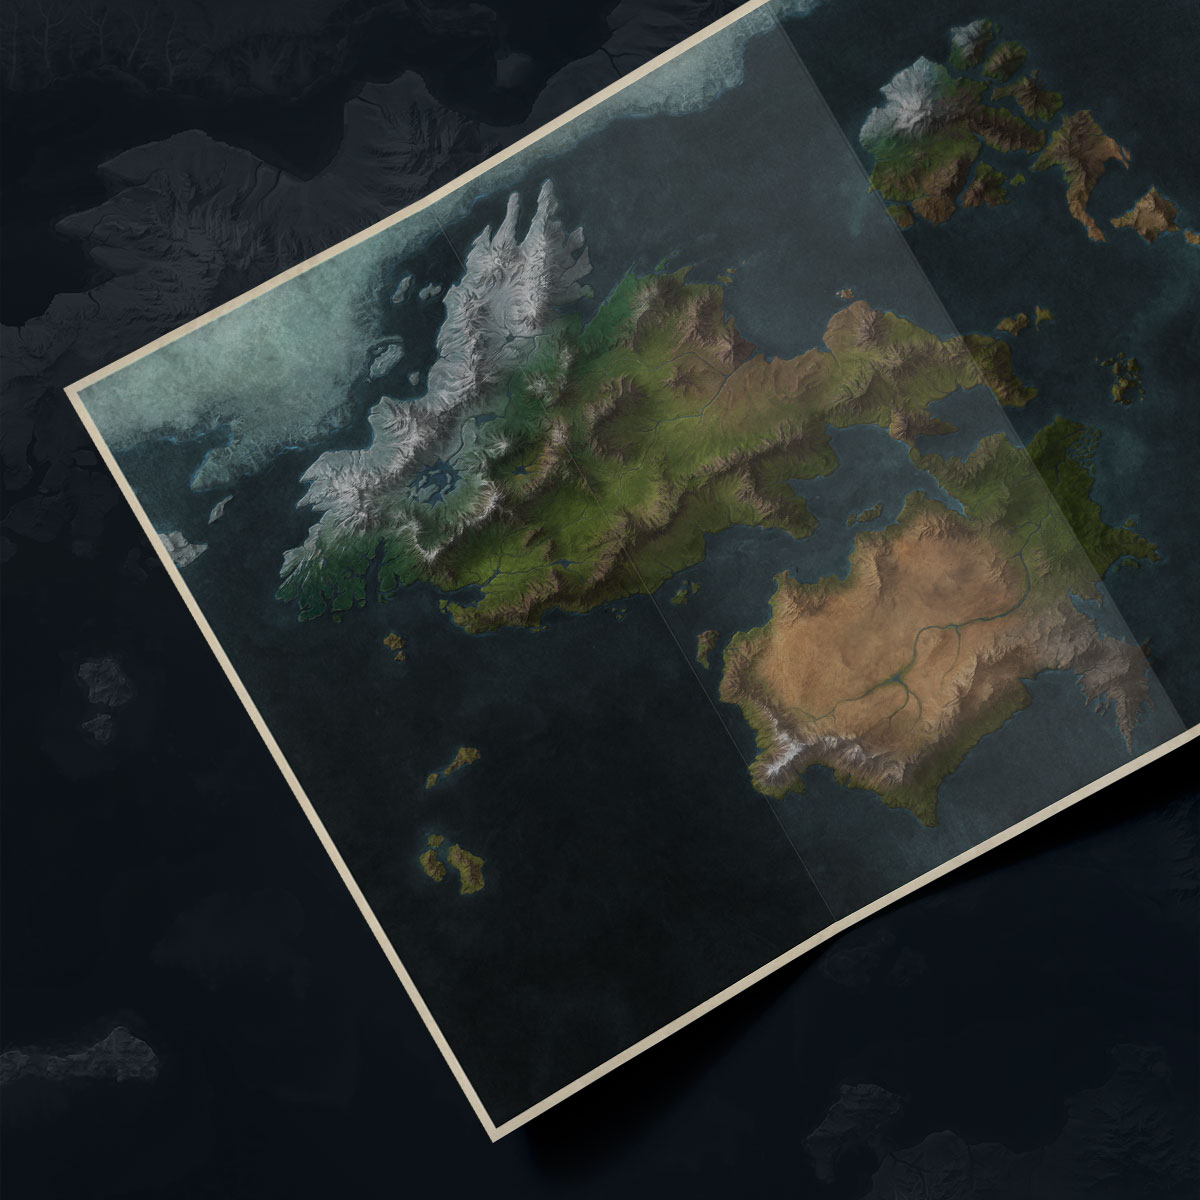 Bản đồ Runeterra của Liên Minh Huyền Thoại 2024 là một trong những điểm nhấn lớn nhất của trò chơi này. Từ các địa điểm mới cho đến các cuộc chiến đầy hào hùng, người chơi sẽ được khám phá những địa điểm thần tiên và đối mặt với các kẻ thù nguy hiểm. Hãy sẵn sàng để thách thức và vượt qua mọi giới hạn!